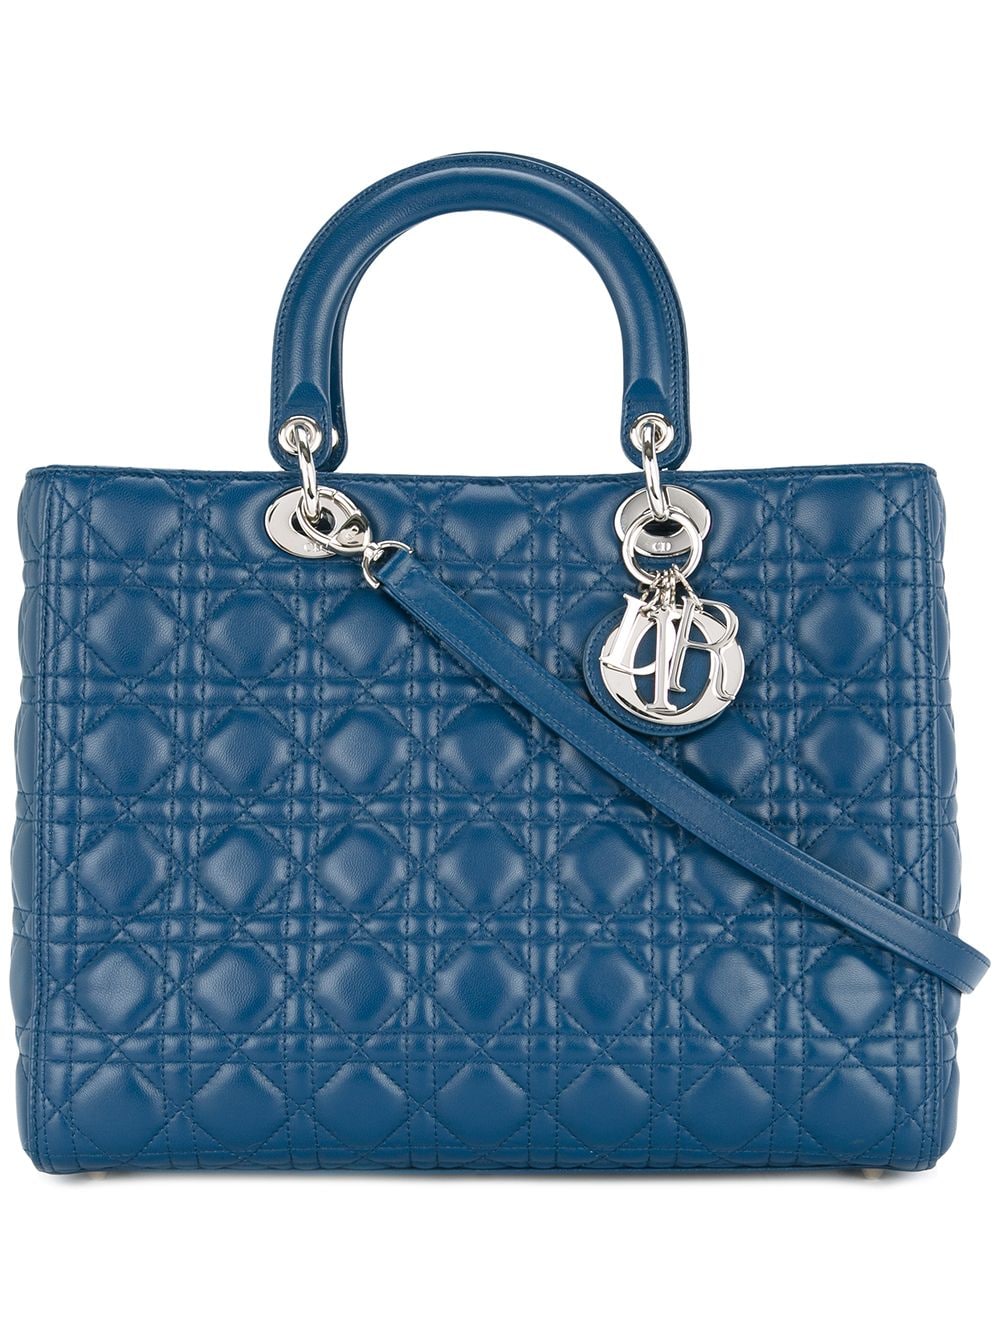 Christian Dior Pre-Owned Lady Dior Cannage 2way Handbag - Farfetch